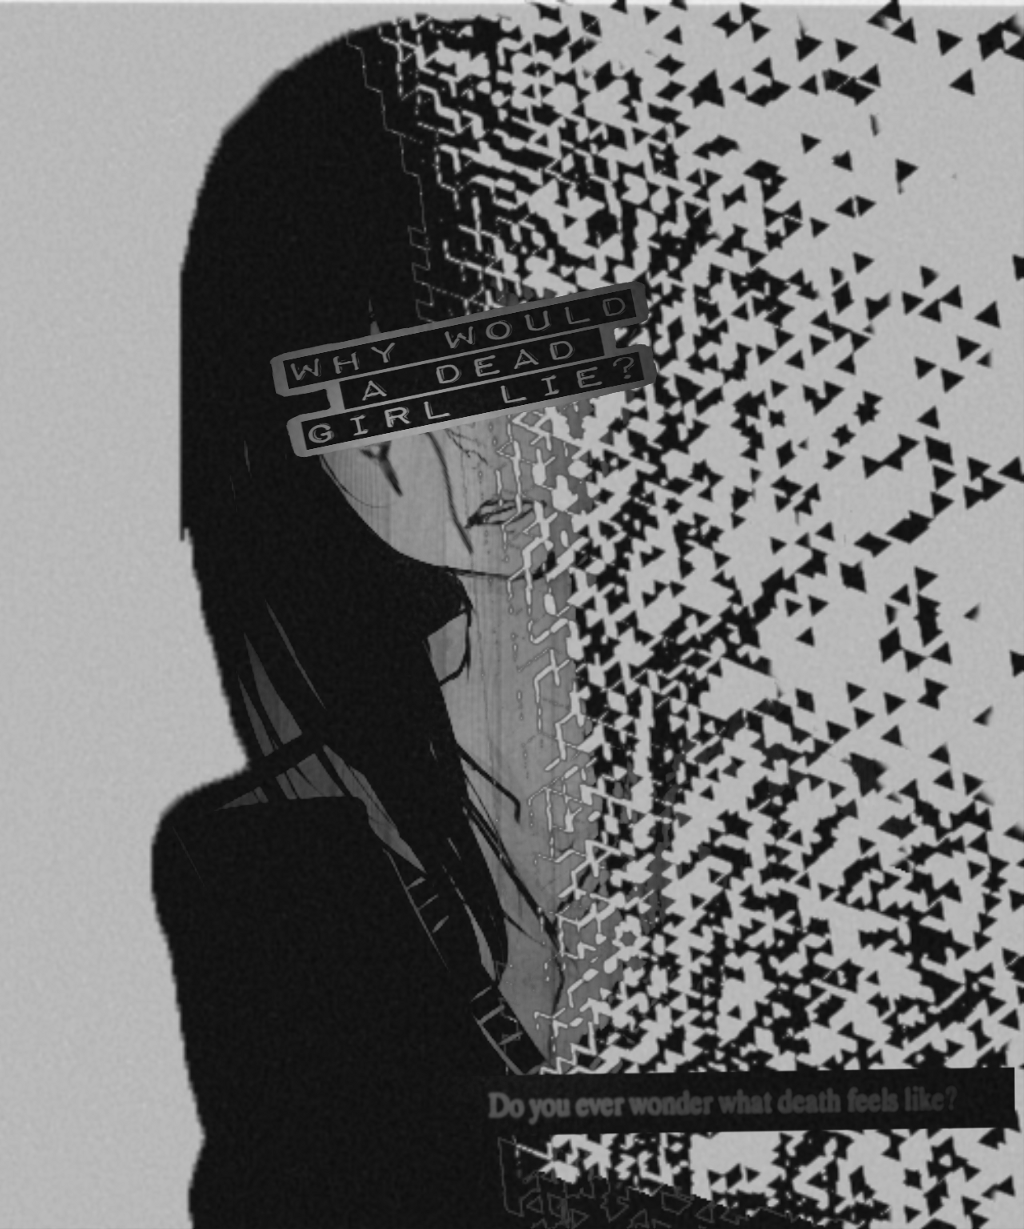 Depressed Sad Anime Drawings